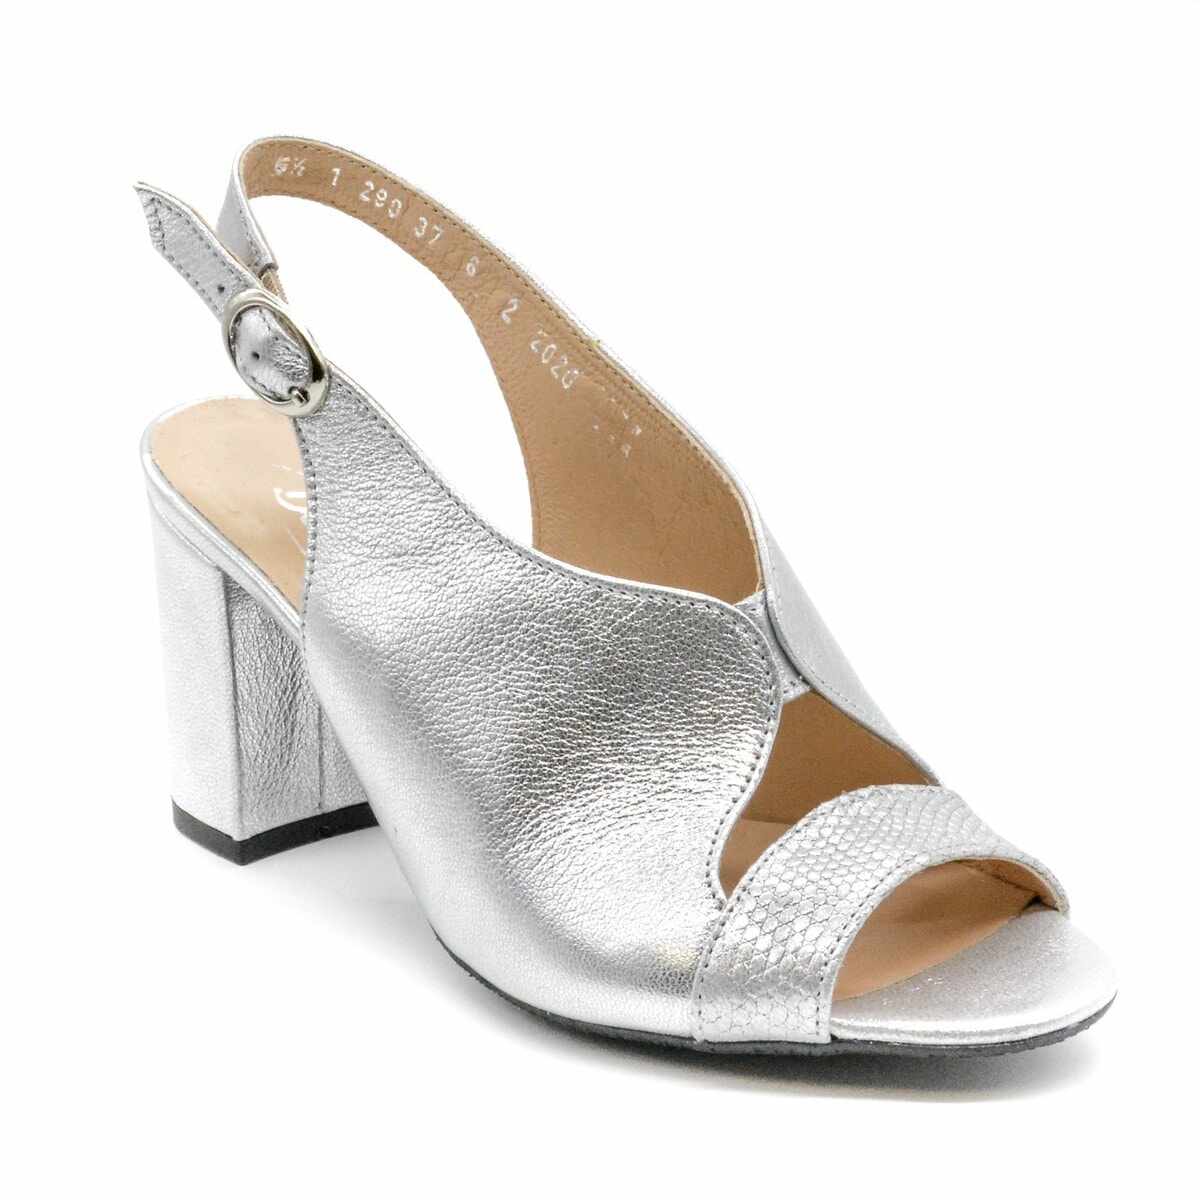 Pantofi eleganti dama, Beatrixx, din piele naturala, albi, cod 1290-Alb